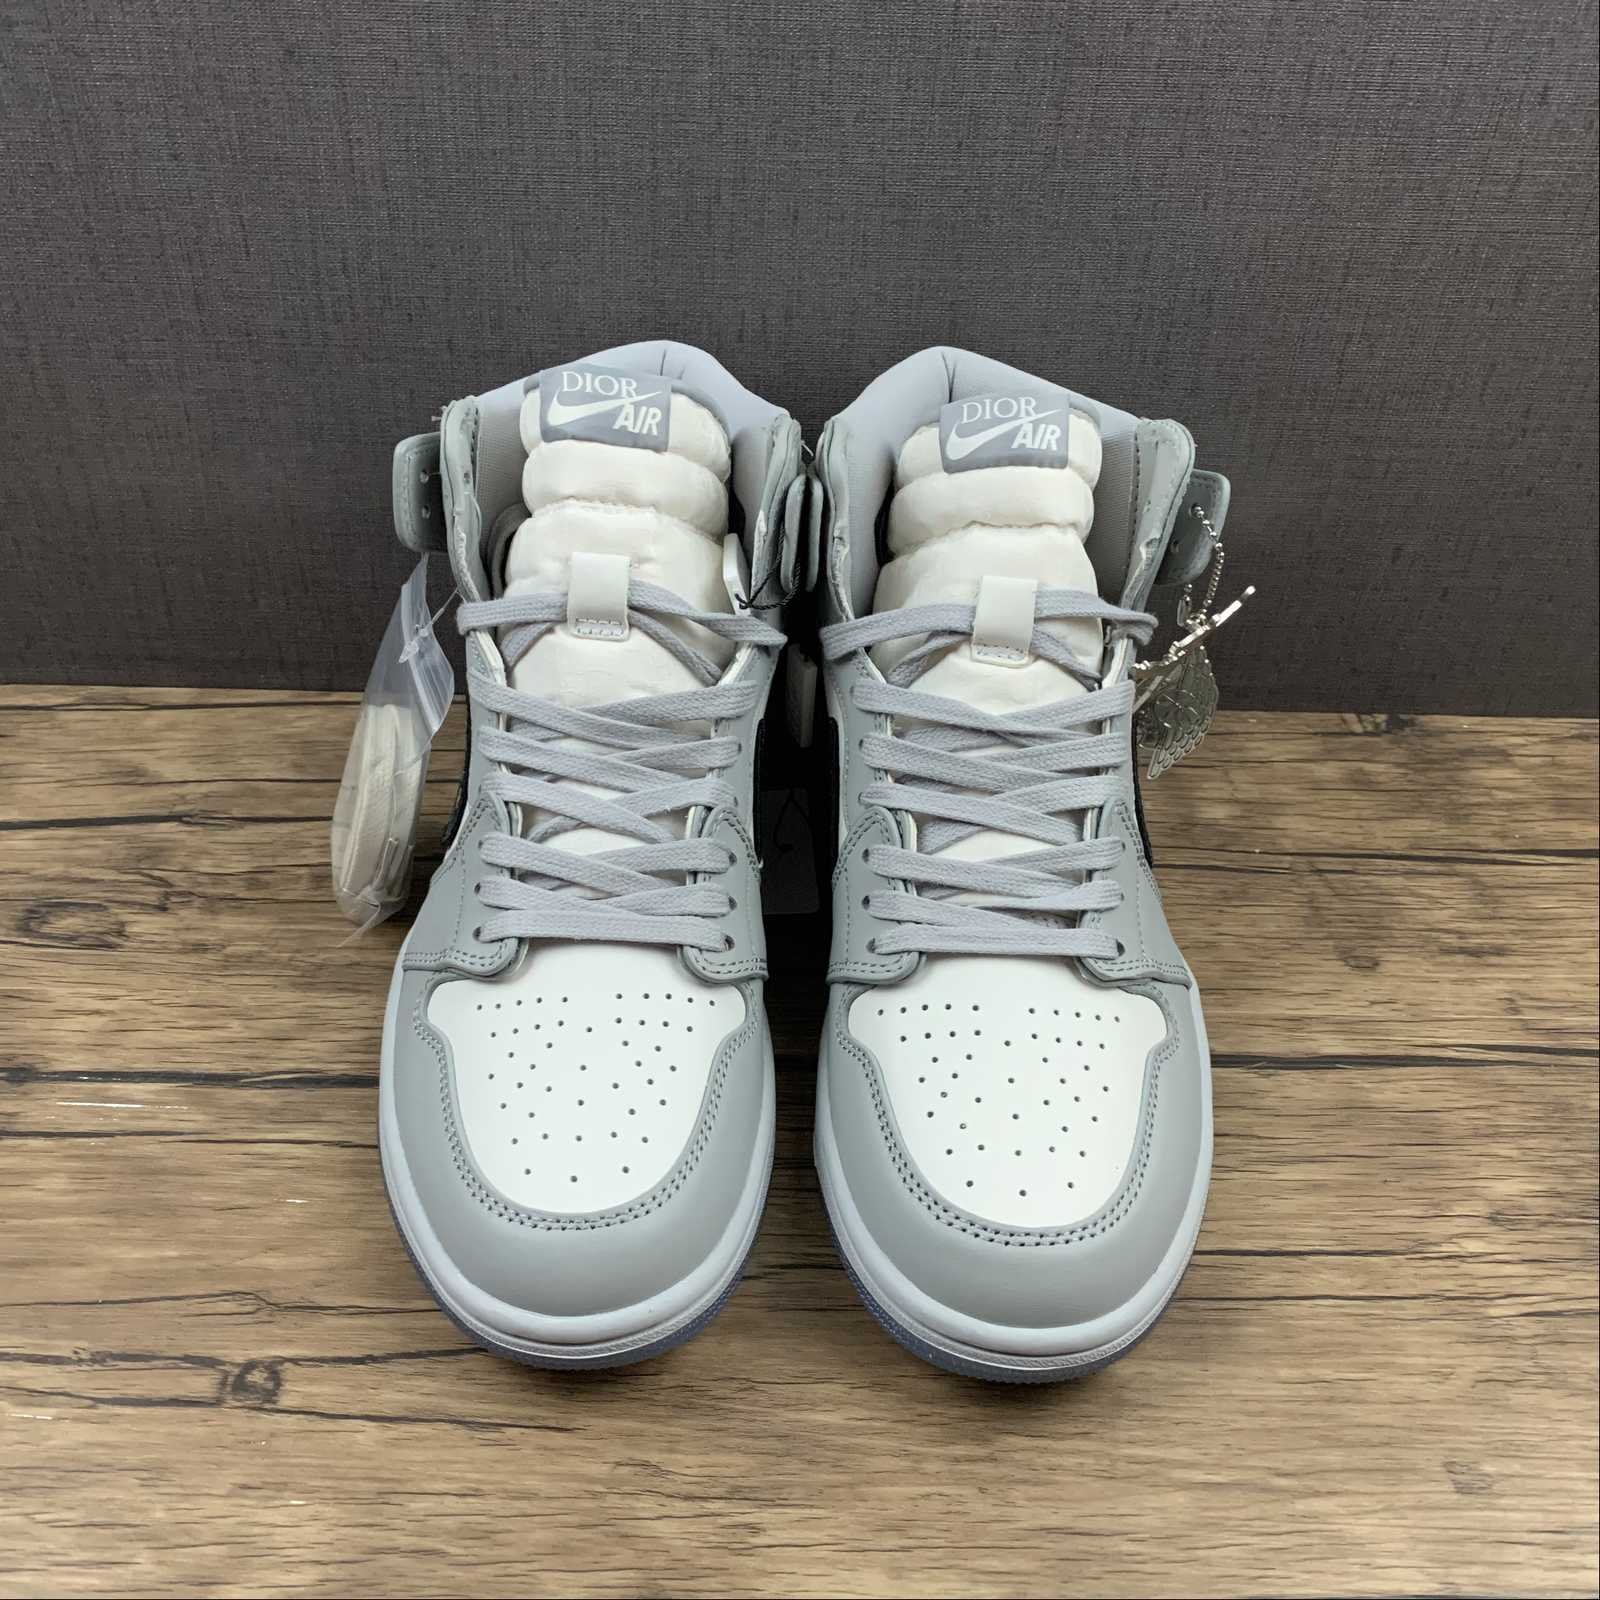 Air Jordan 1 x Dior High